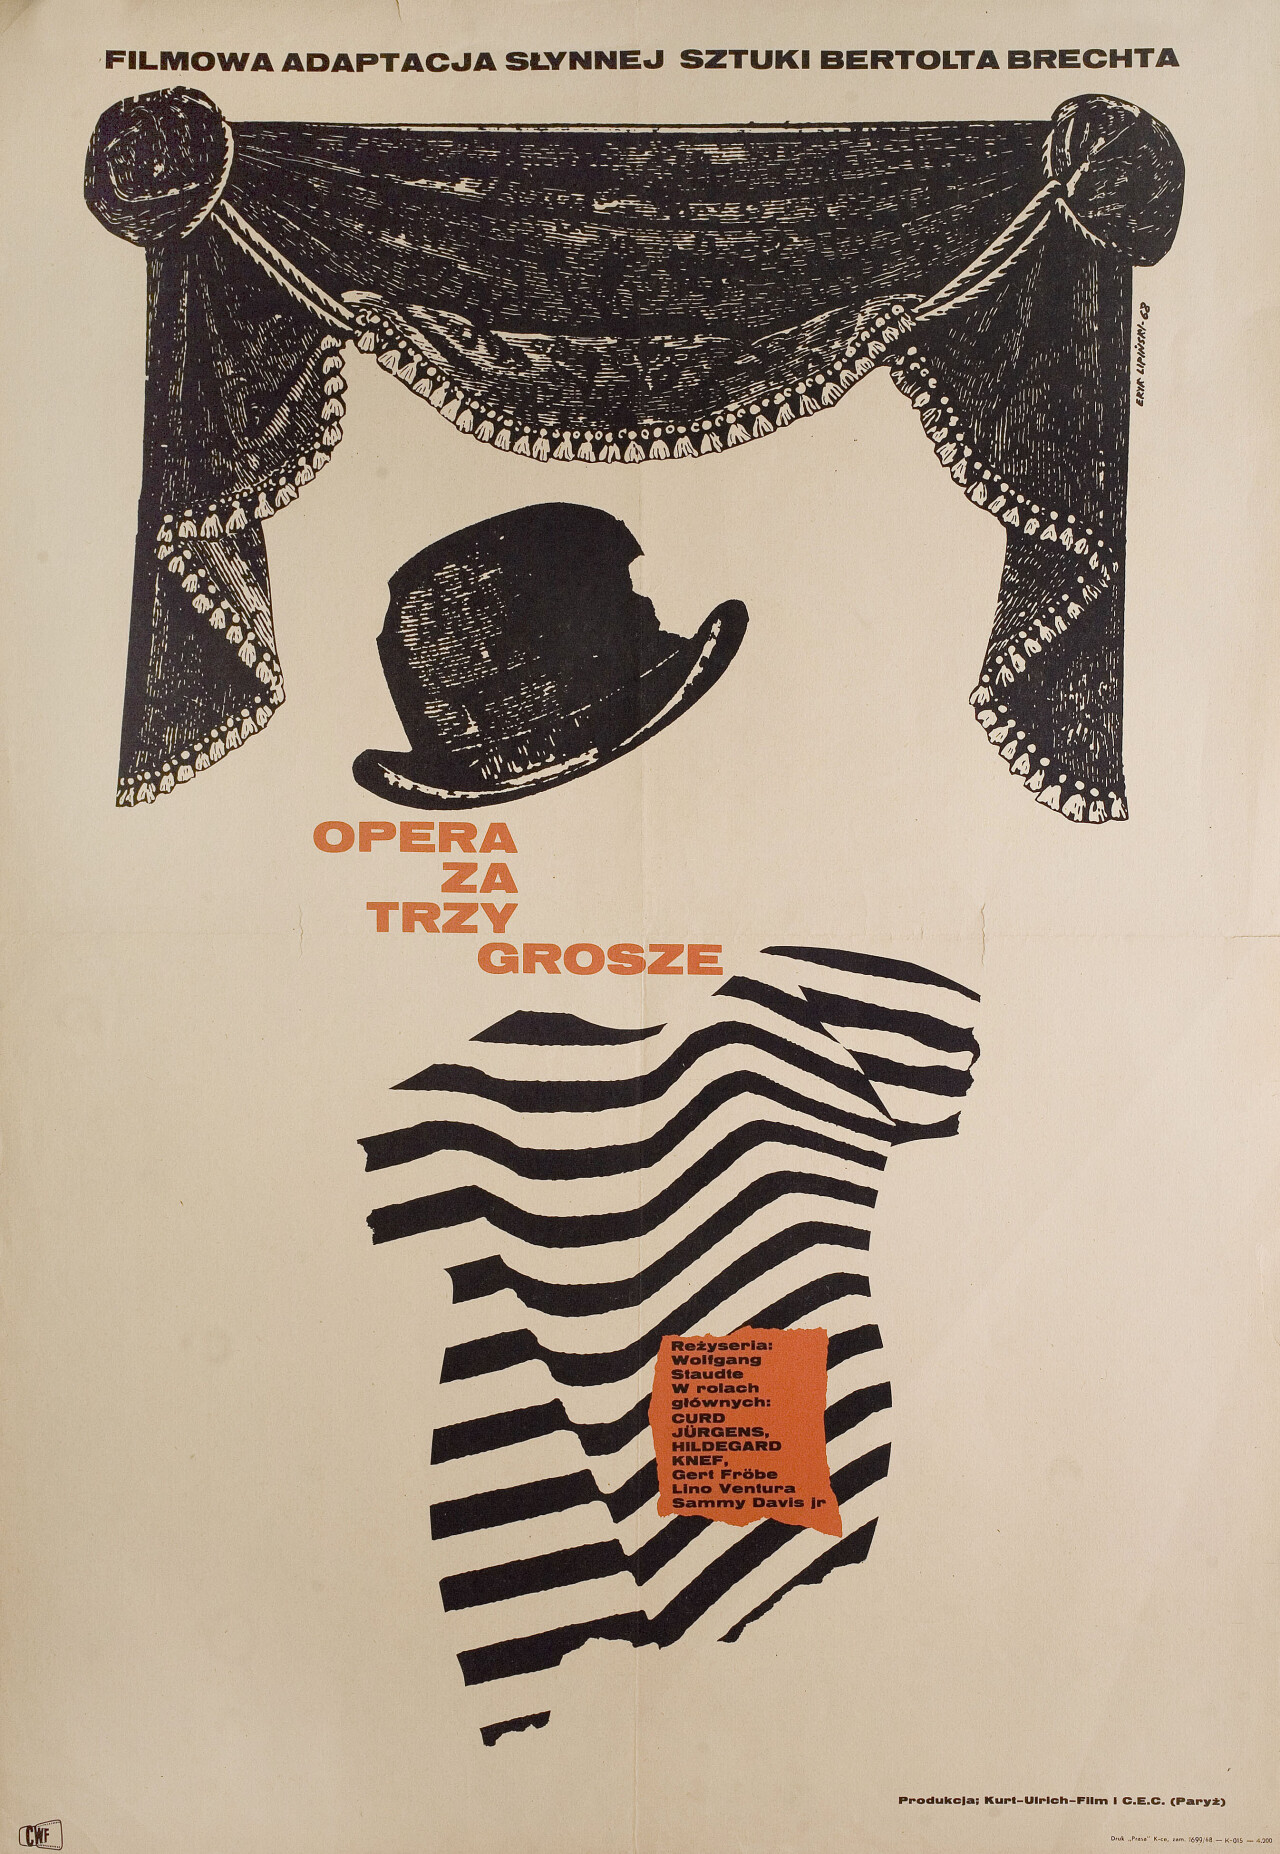 Трехгрошовая опера (The Threepenny Opera, 1963), режиссёр Вольфганг Штаудте, минималистичный постер к фильму (Польша, 1968 год), автор Эрик Липински